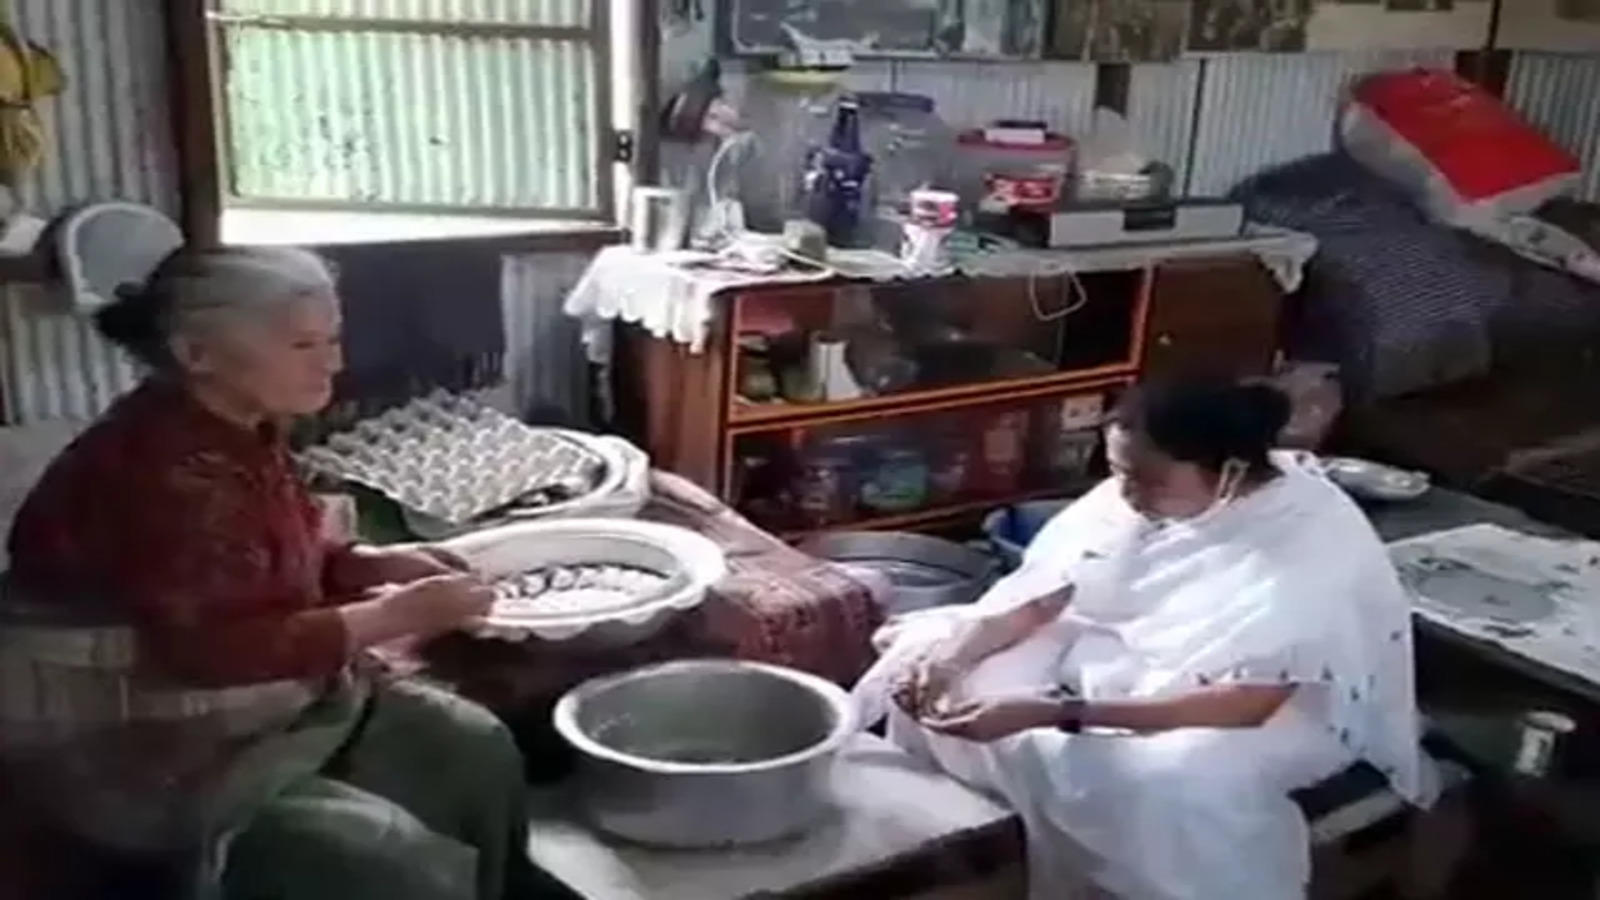 Video : CM ममता बनर्जी का दिखा खास अंदाज, दुकान पर बैठकर बनाए मोमोज